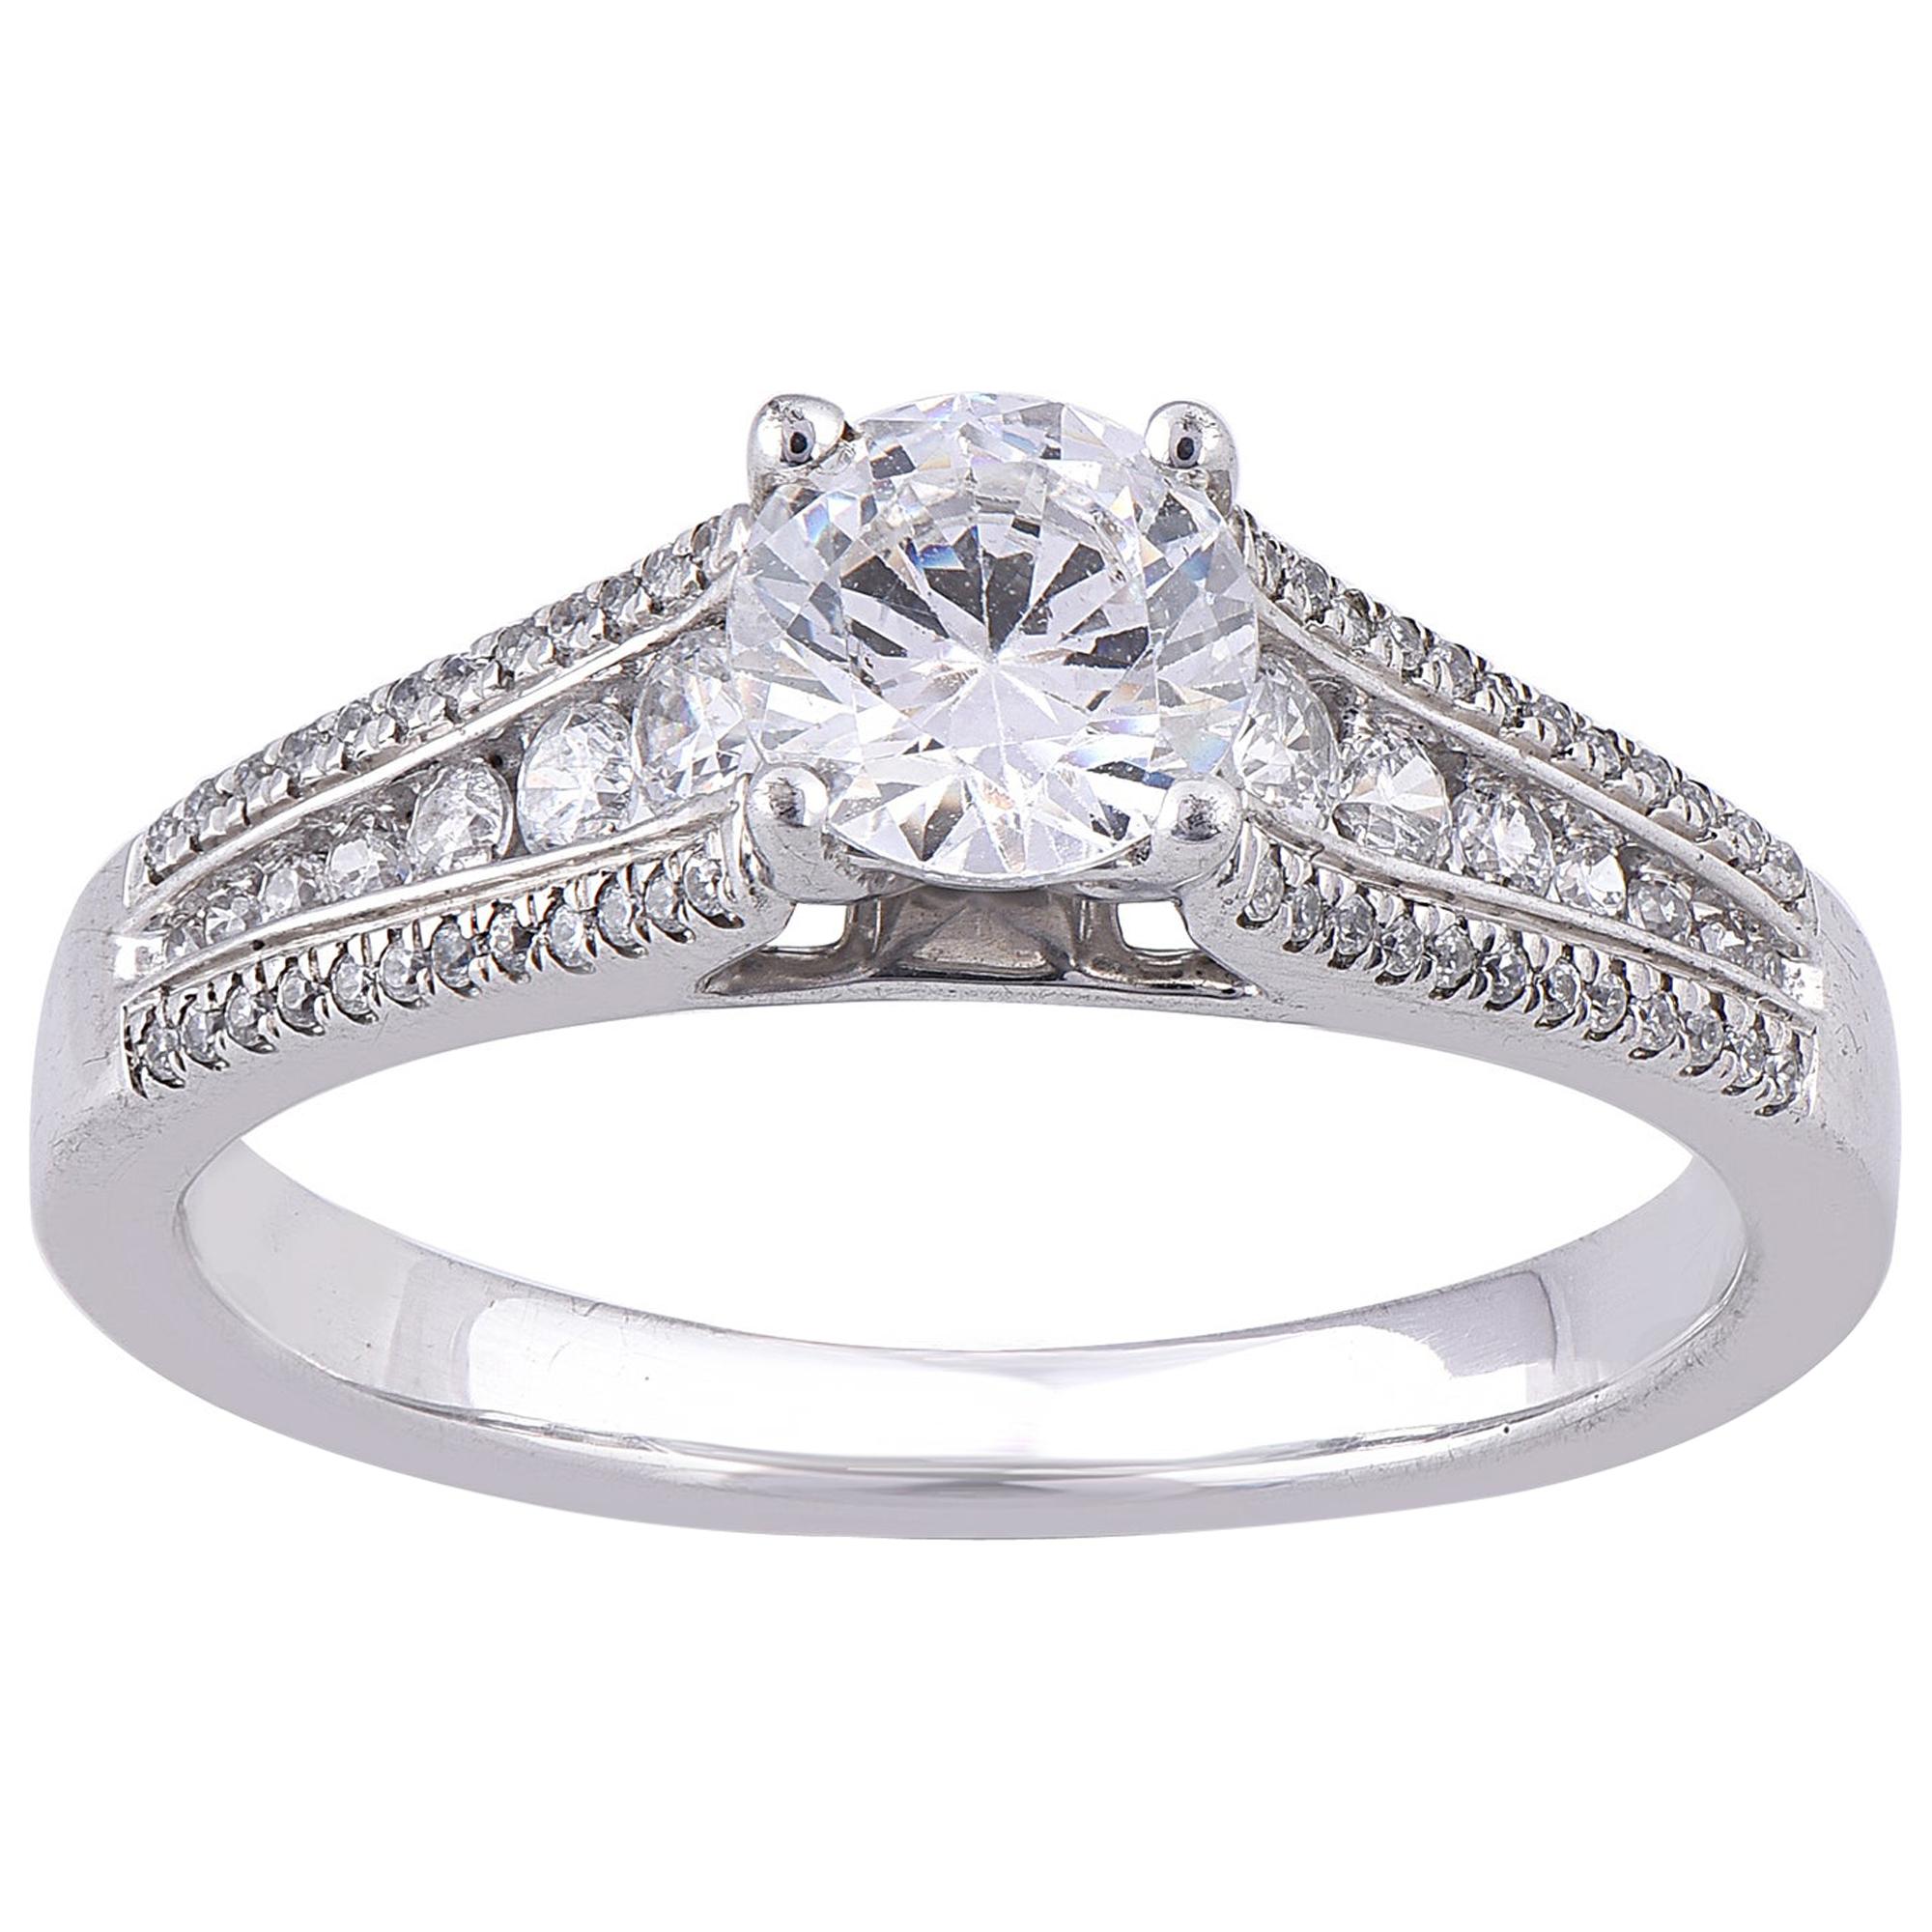 TJD 1.00 Carat Round Diamond 18 Karat White Gold Engagement Ring